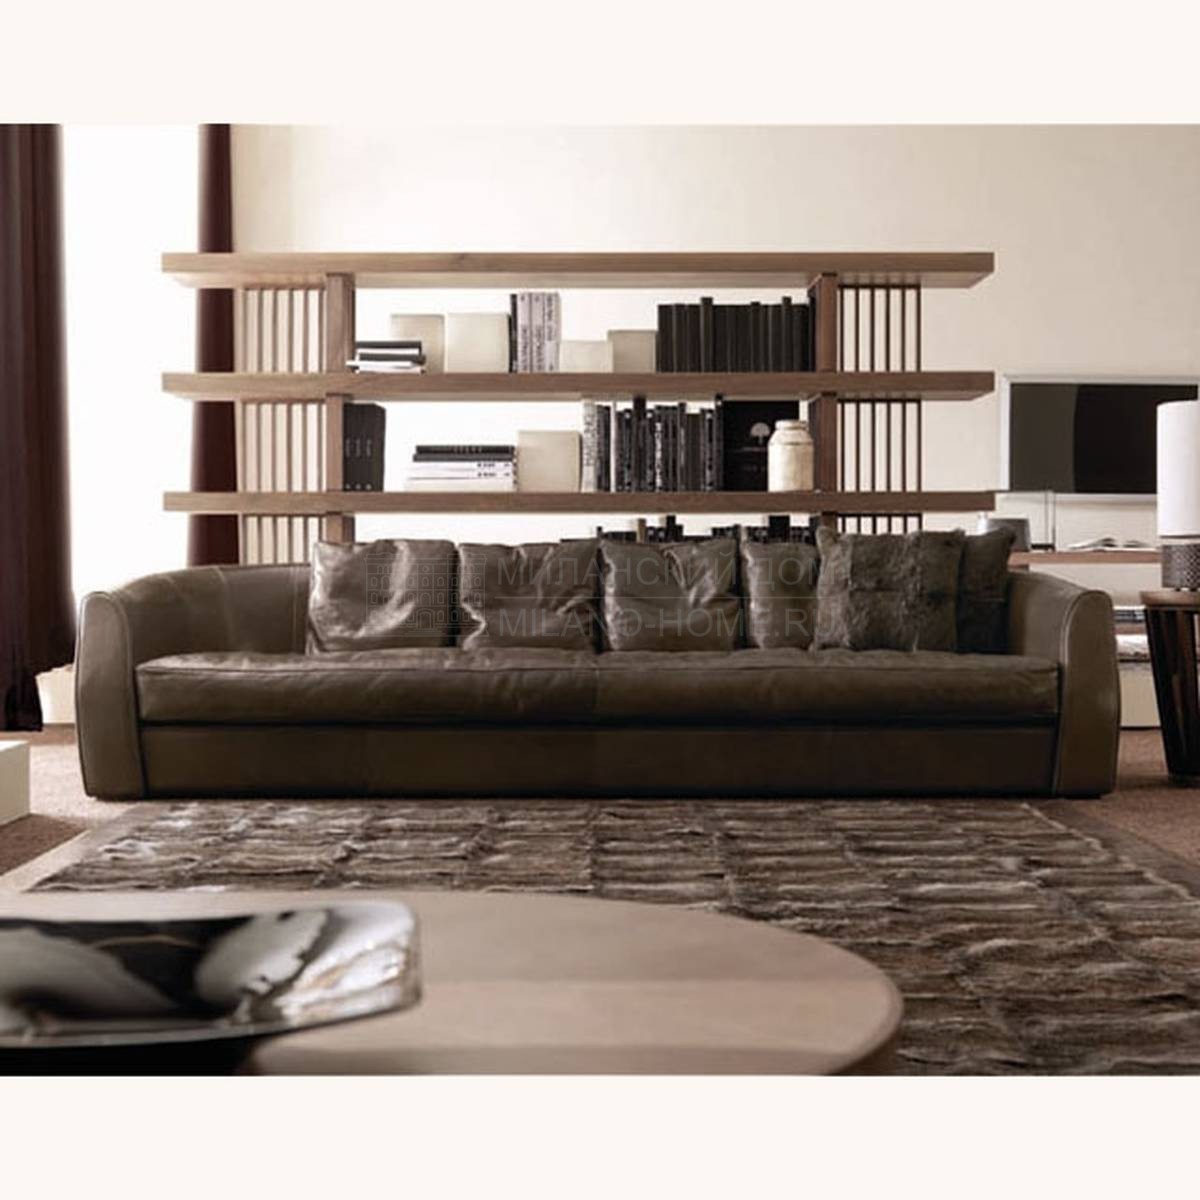 Прямой диван Rubens Sofa из Италии фабрики ULIVI